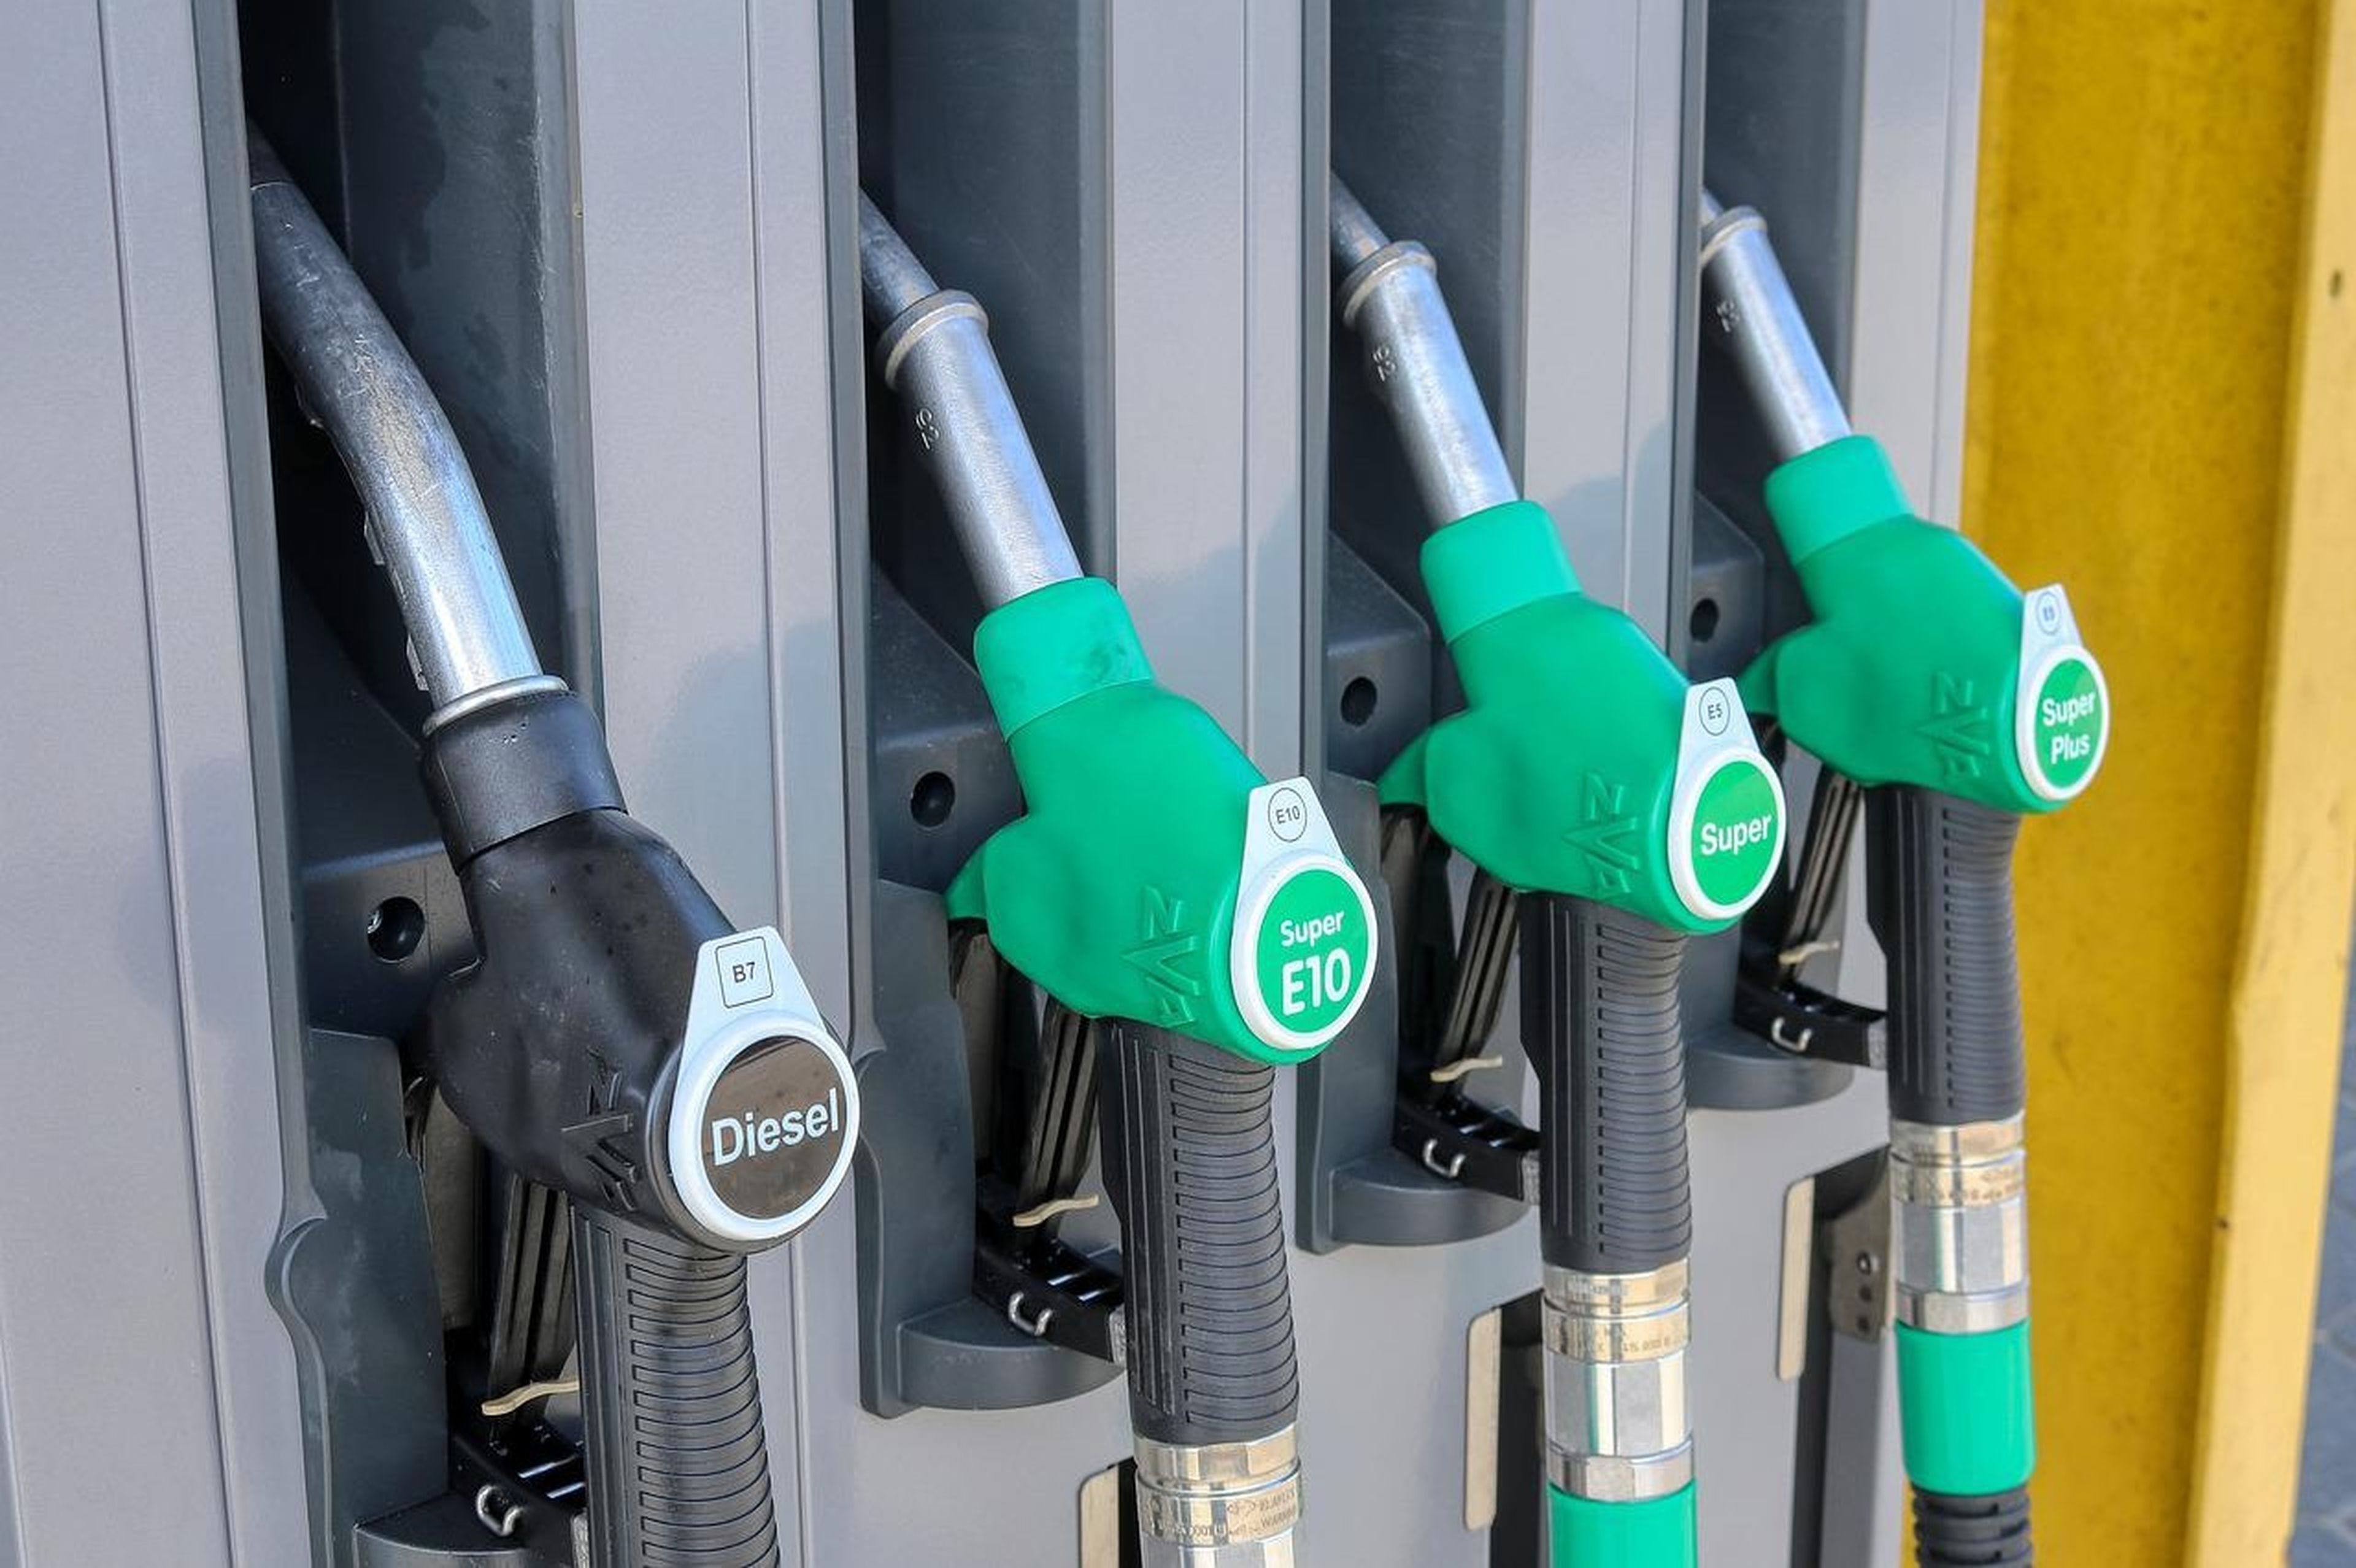 El precio de los carburantes toca máximos del año